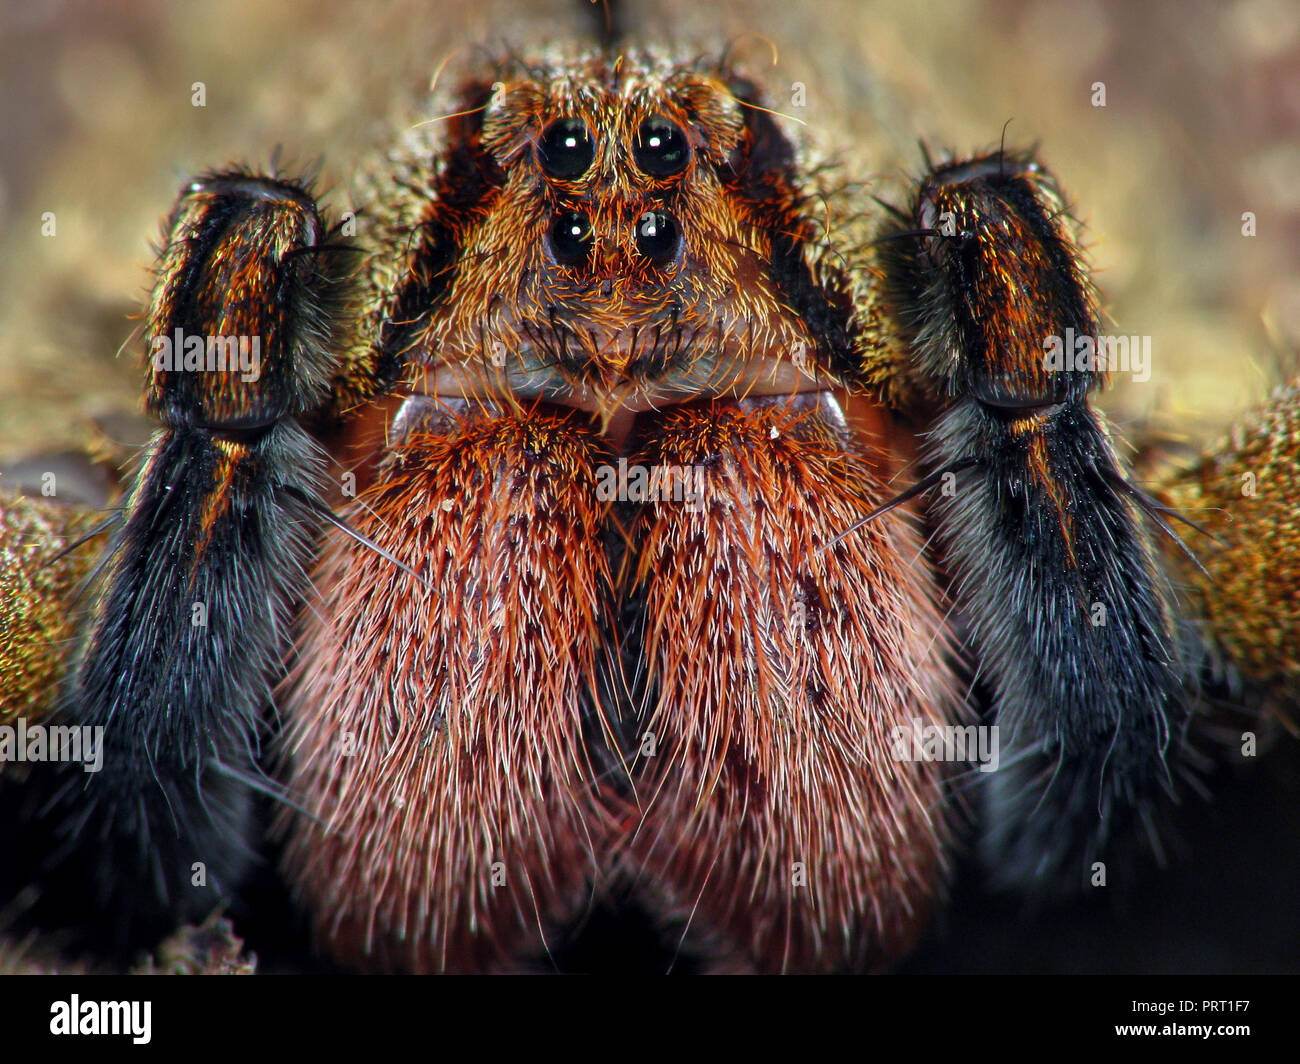 L'errance du Brésil (araignée Phoneutria aranha, armadeira) font face à l'araignée macro montrant les yeux, portrait détaillé. Araignée venimeuse du Brésil. Banque D'Images